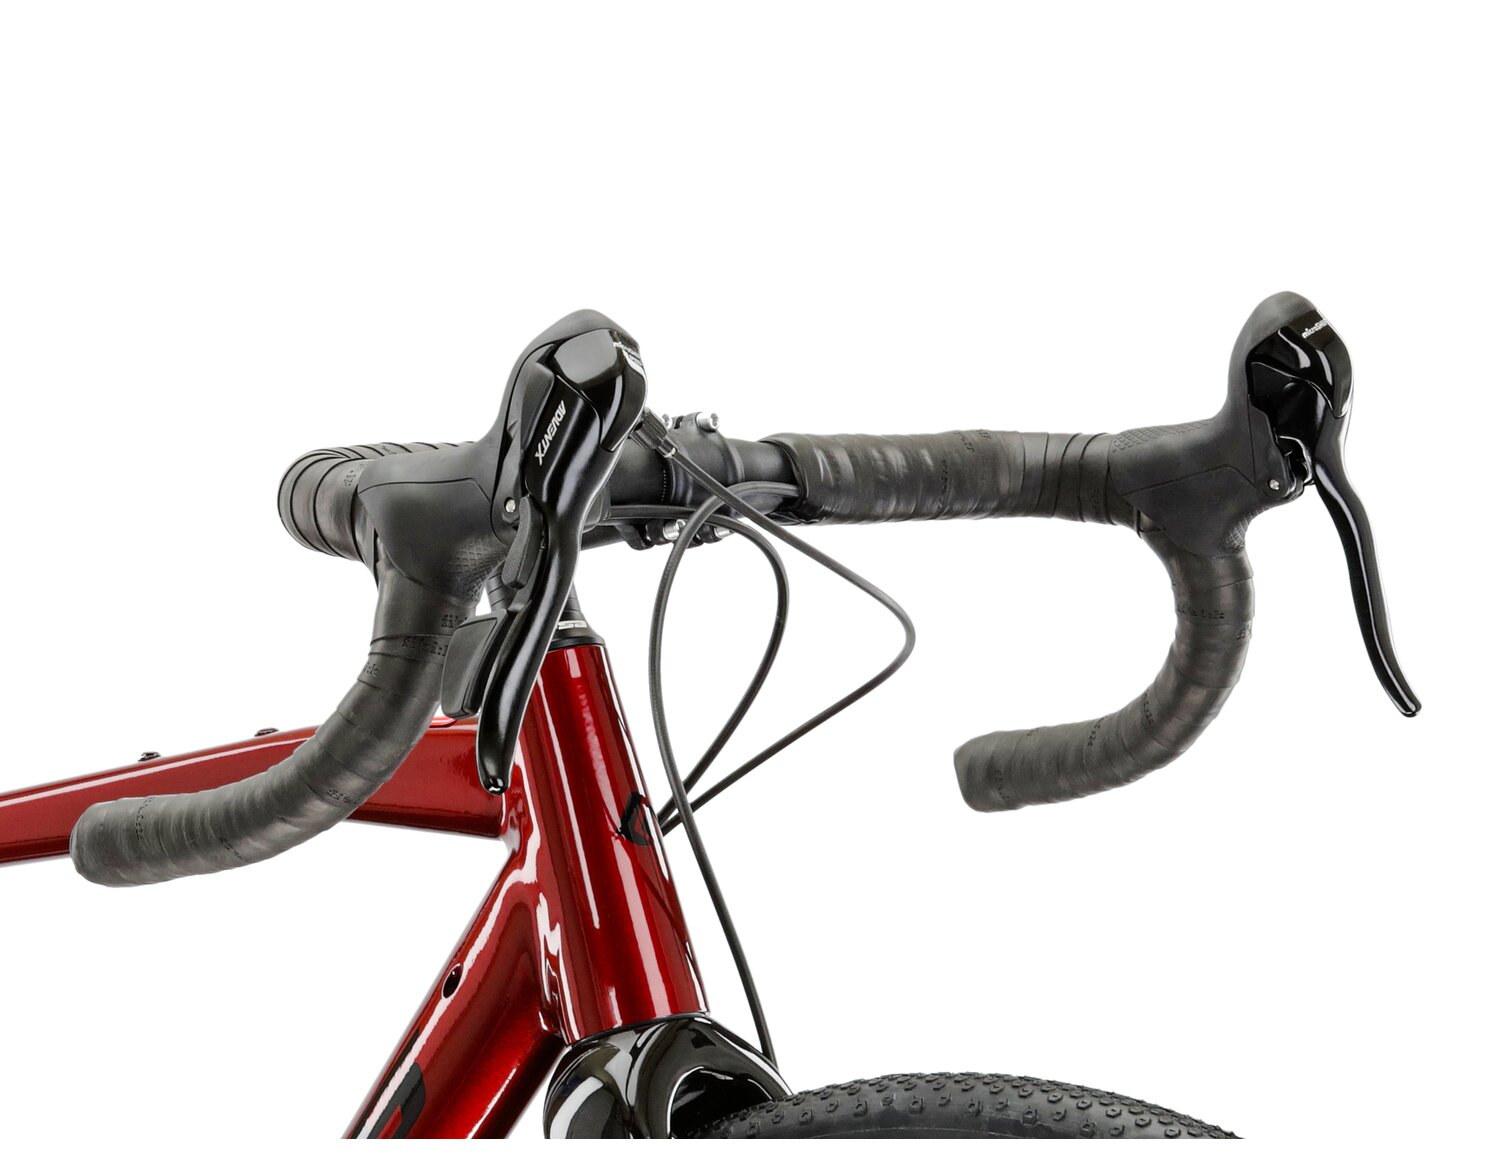  Aluminiowa rama, sztywny carbonowy widelec oraz opony Wanda w rowerze gravelowym KROSS Esker 2.0 MS 